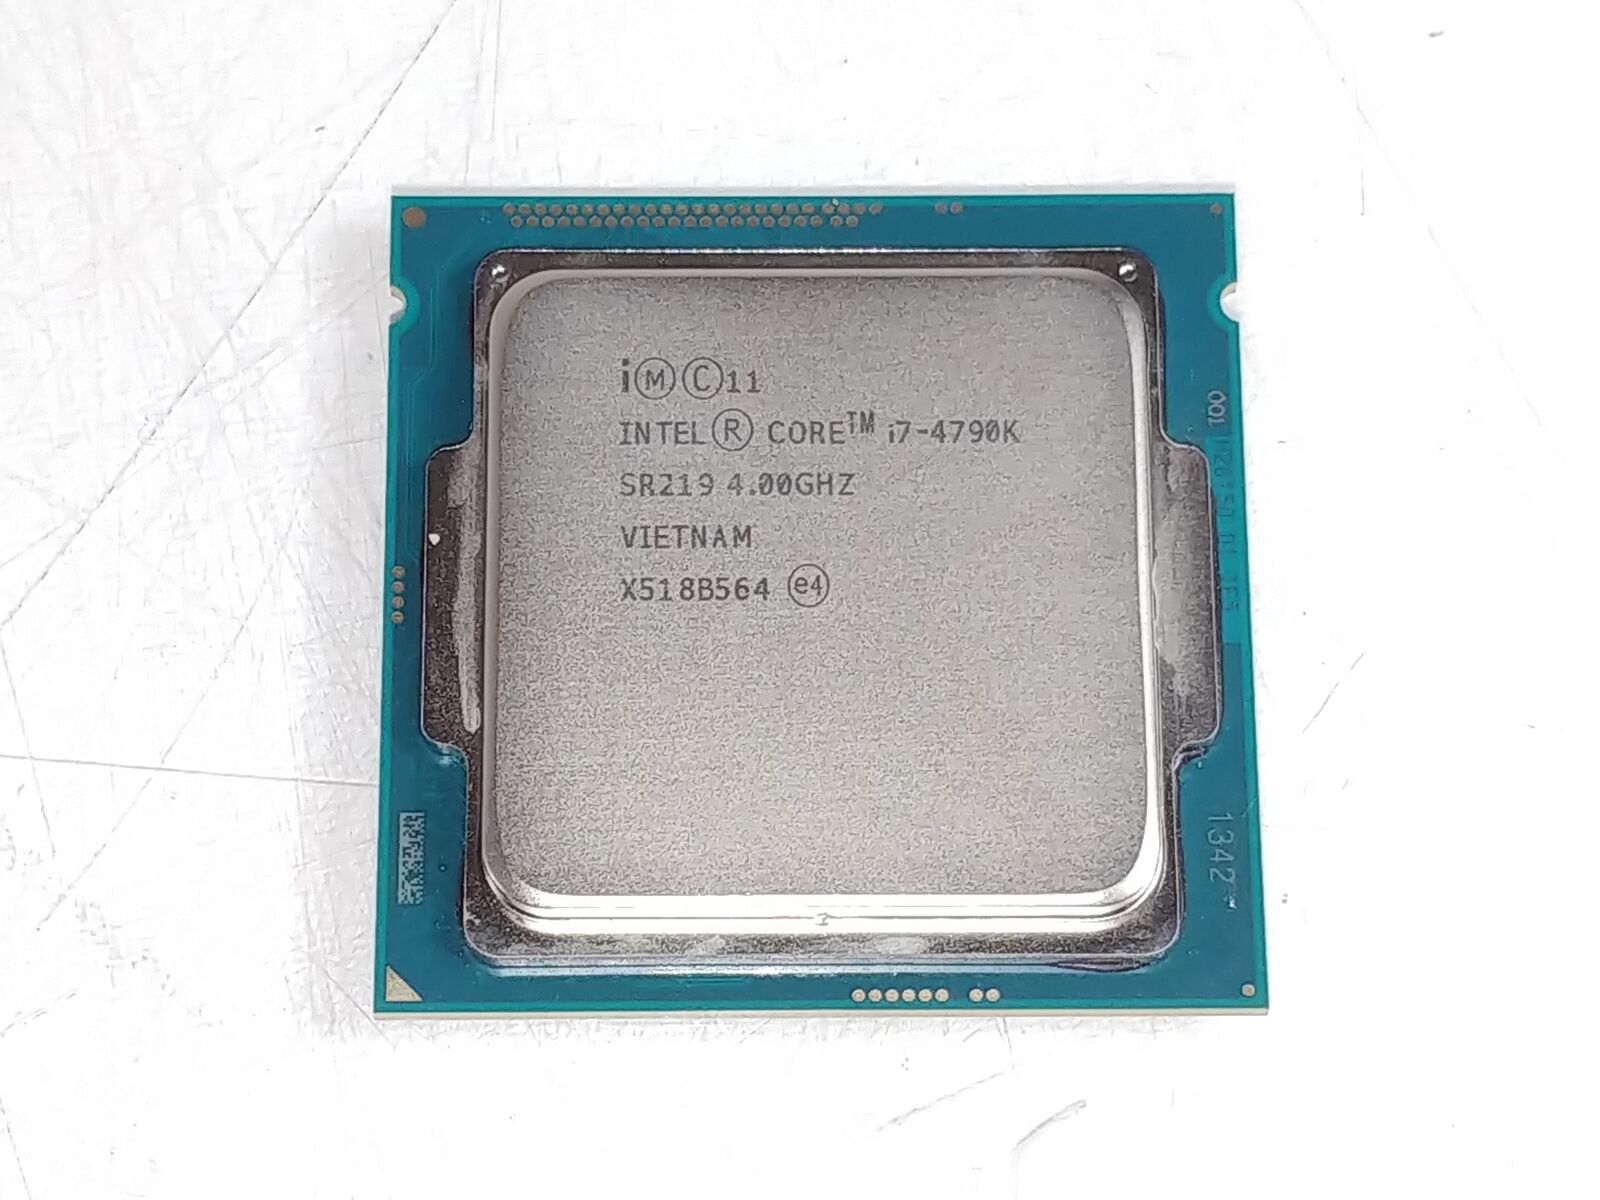 Intel Core i7-4790K 4.00 GHz LGA 1150 Desktop CPU Processor SR219